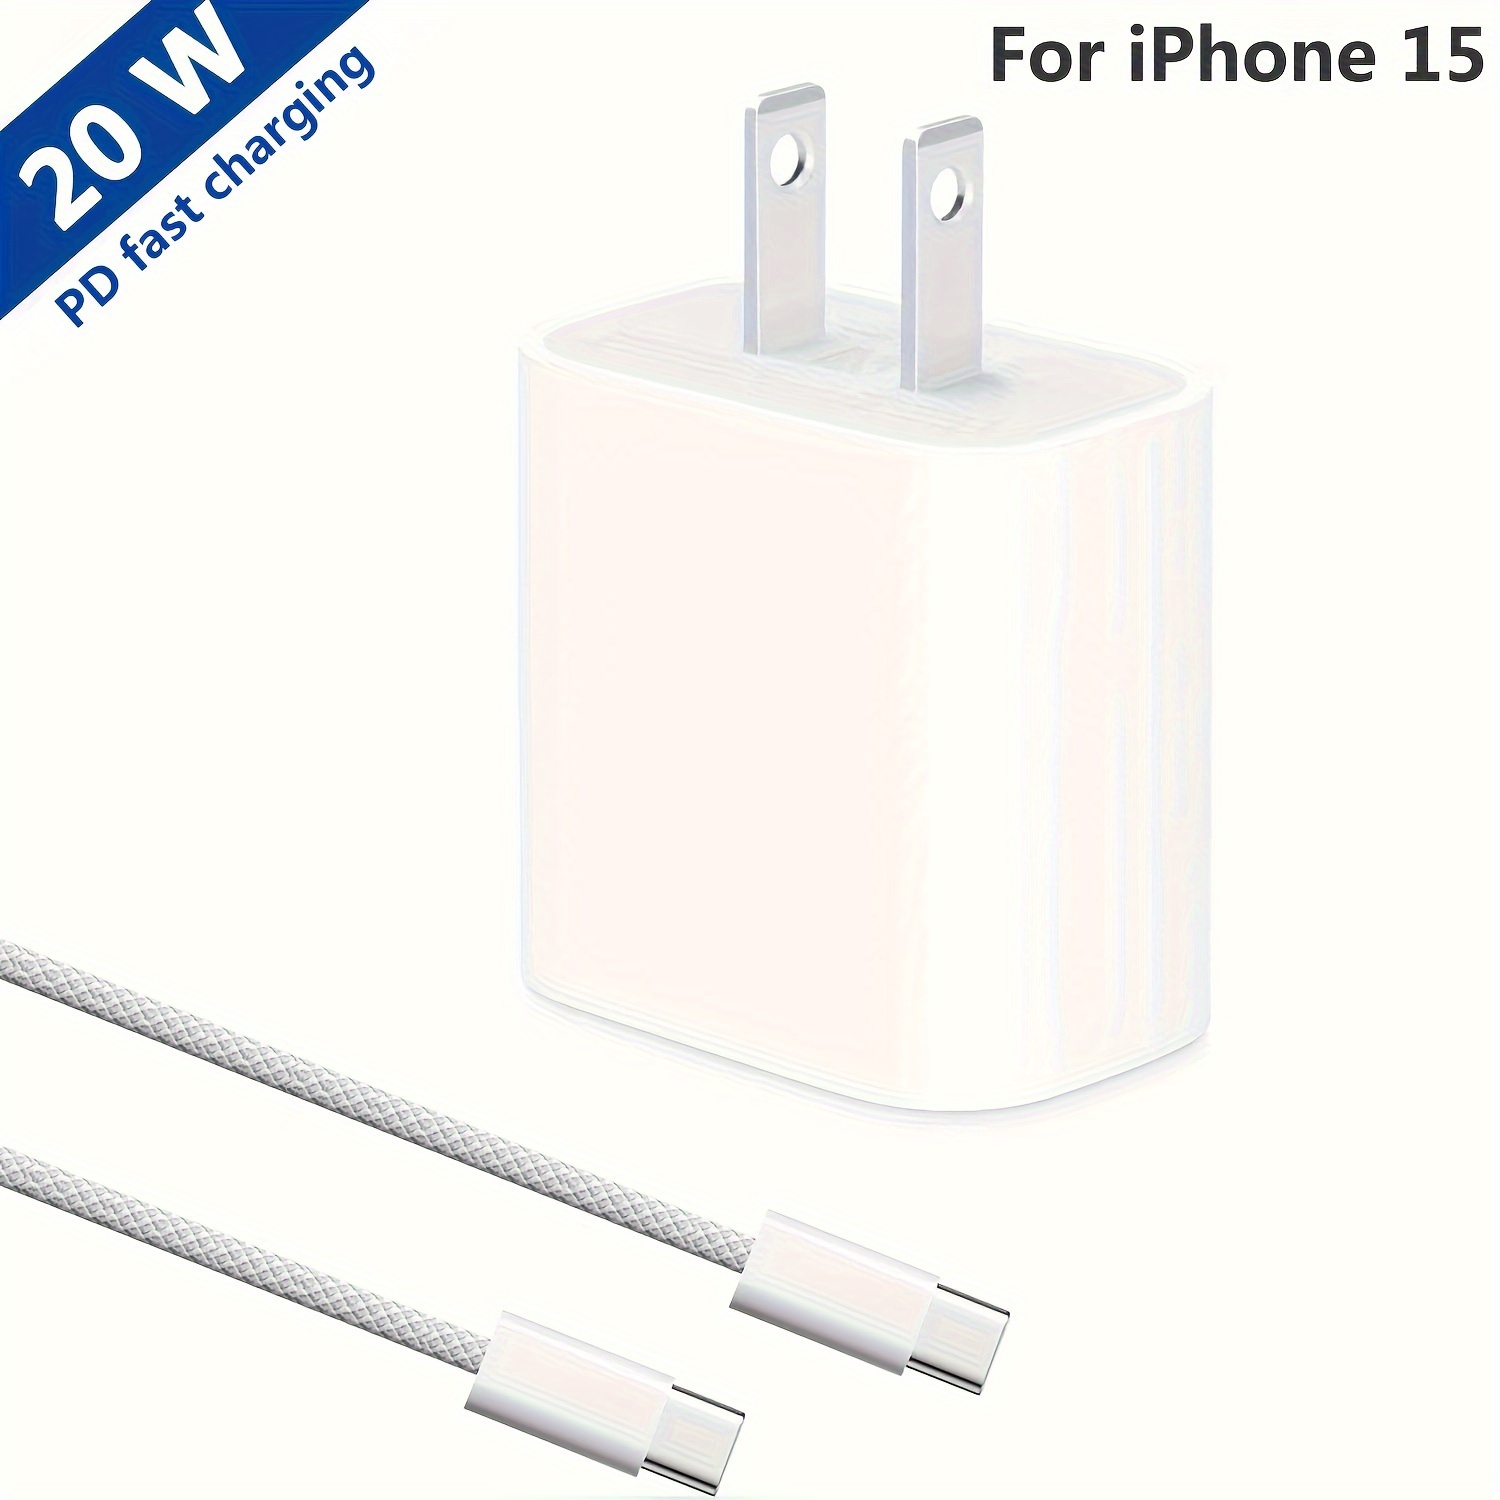 Cargador para iPhone 15 Pro Max de carga rápida, cable de carga USB C a USB  C de 10 pies de largo con bloque de cargador de pared USB C de 20 W para